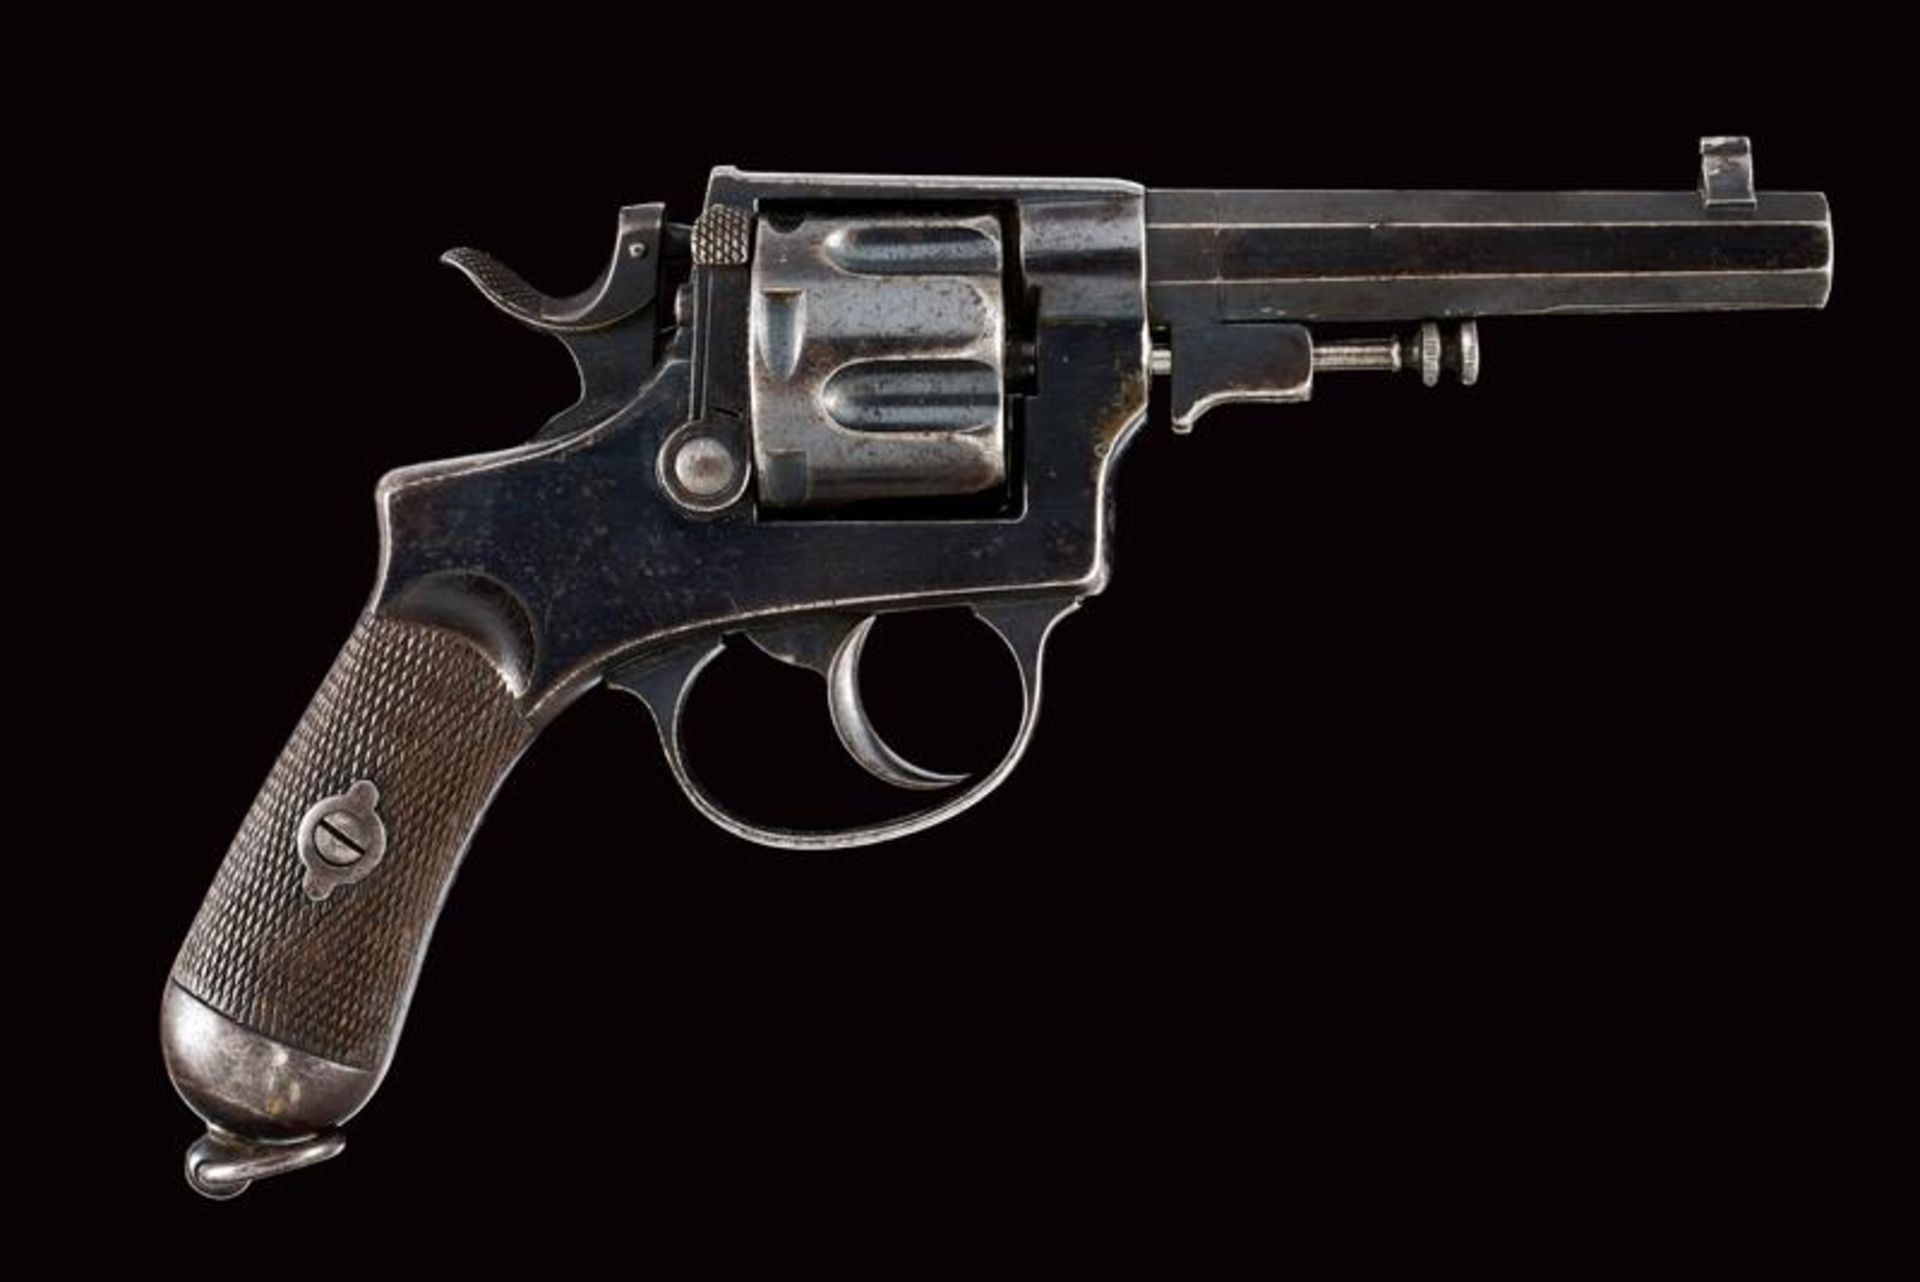 An 1889 model officer's Bodeo revolver